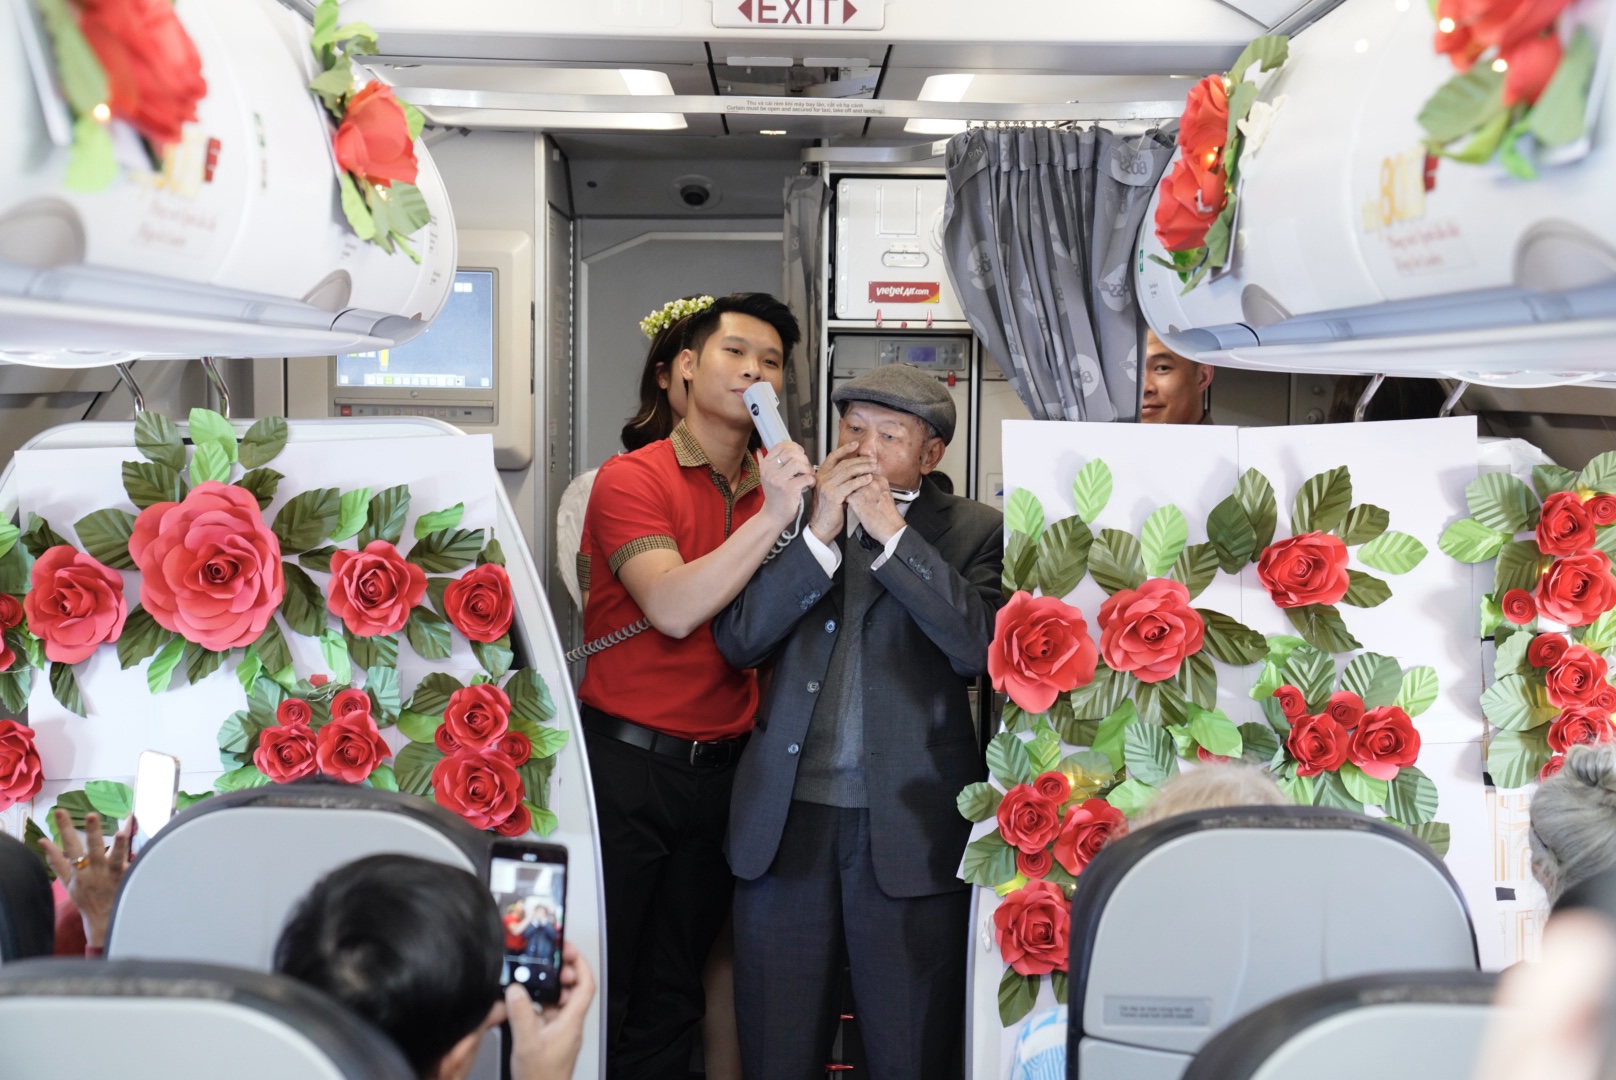 Cụ ông U90 tỏ tình với vợ ngọt ngào trên chuyến bay Vietjet ngày Valentine- Ảnh 1.